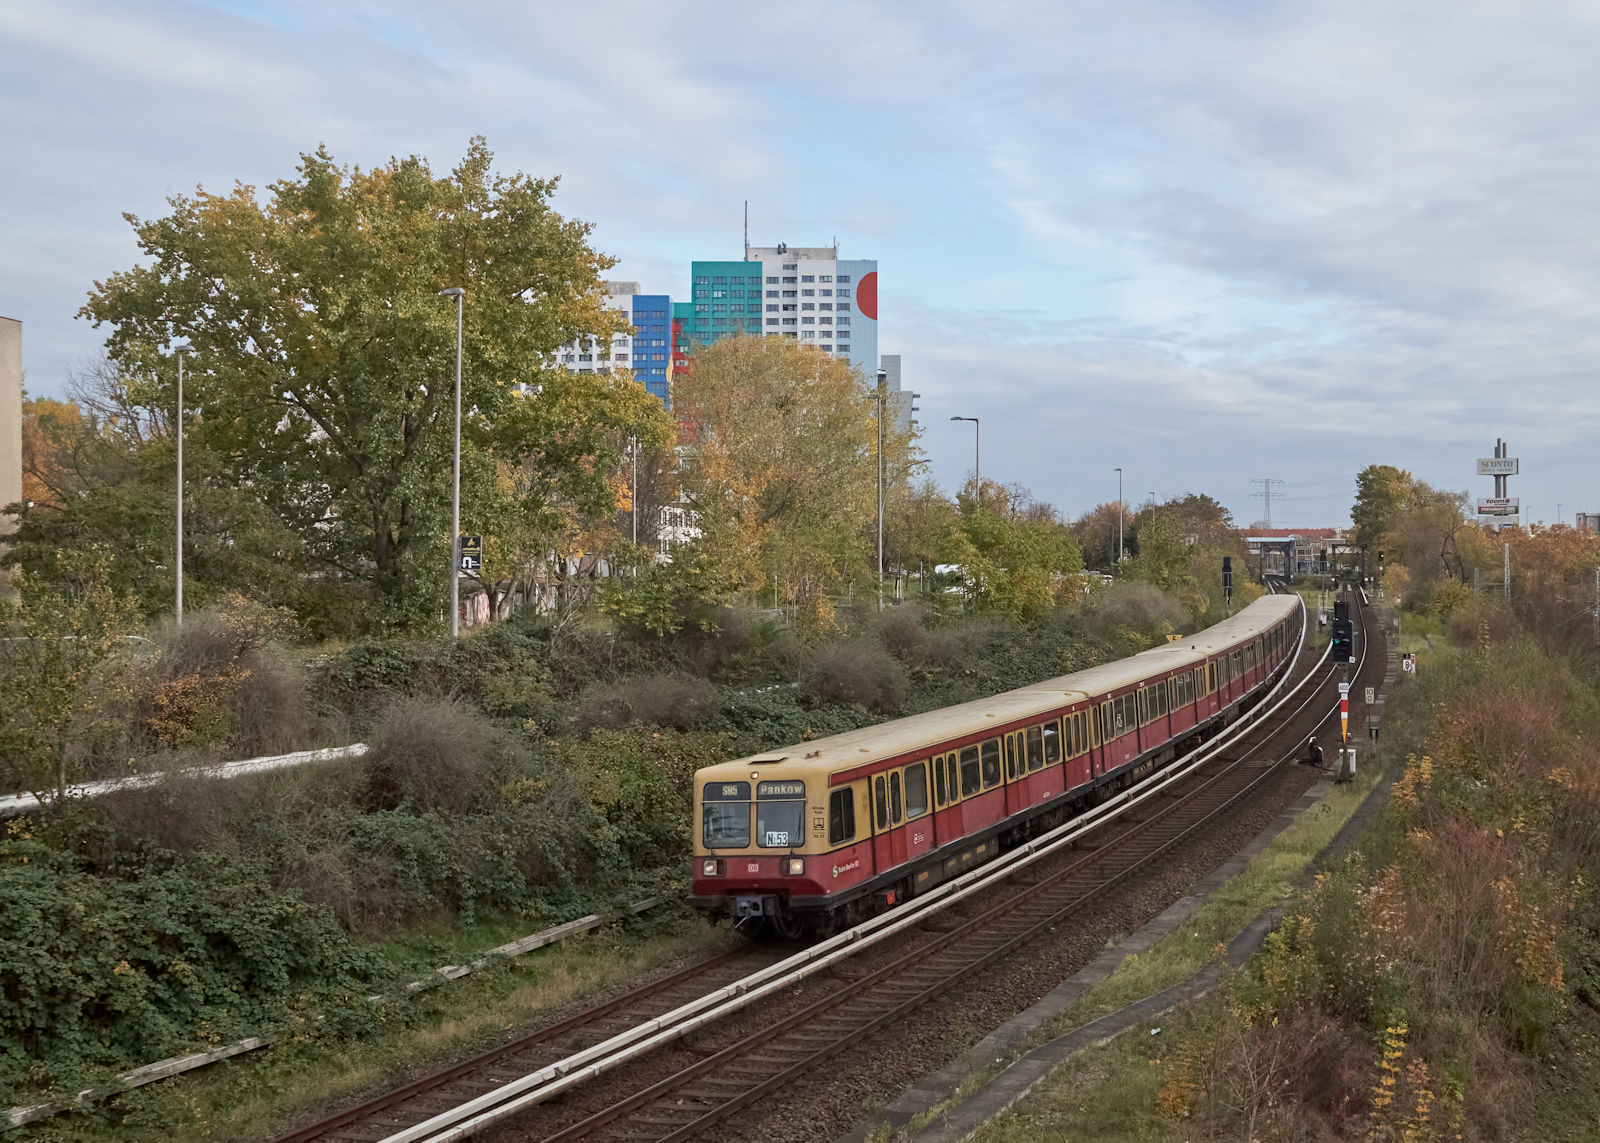 Am vorletzten Einsatztag der BR 485 waren die Züge, wie gewohnt, auf der S85 unterwegs. AUf der Fahrt nach Pankow erreicht der unbekannte Dreiviertelzug in Kürze den Bahnhof Landsberger Allee.